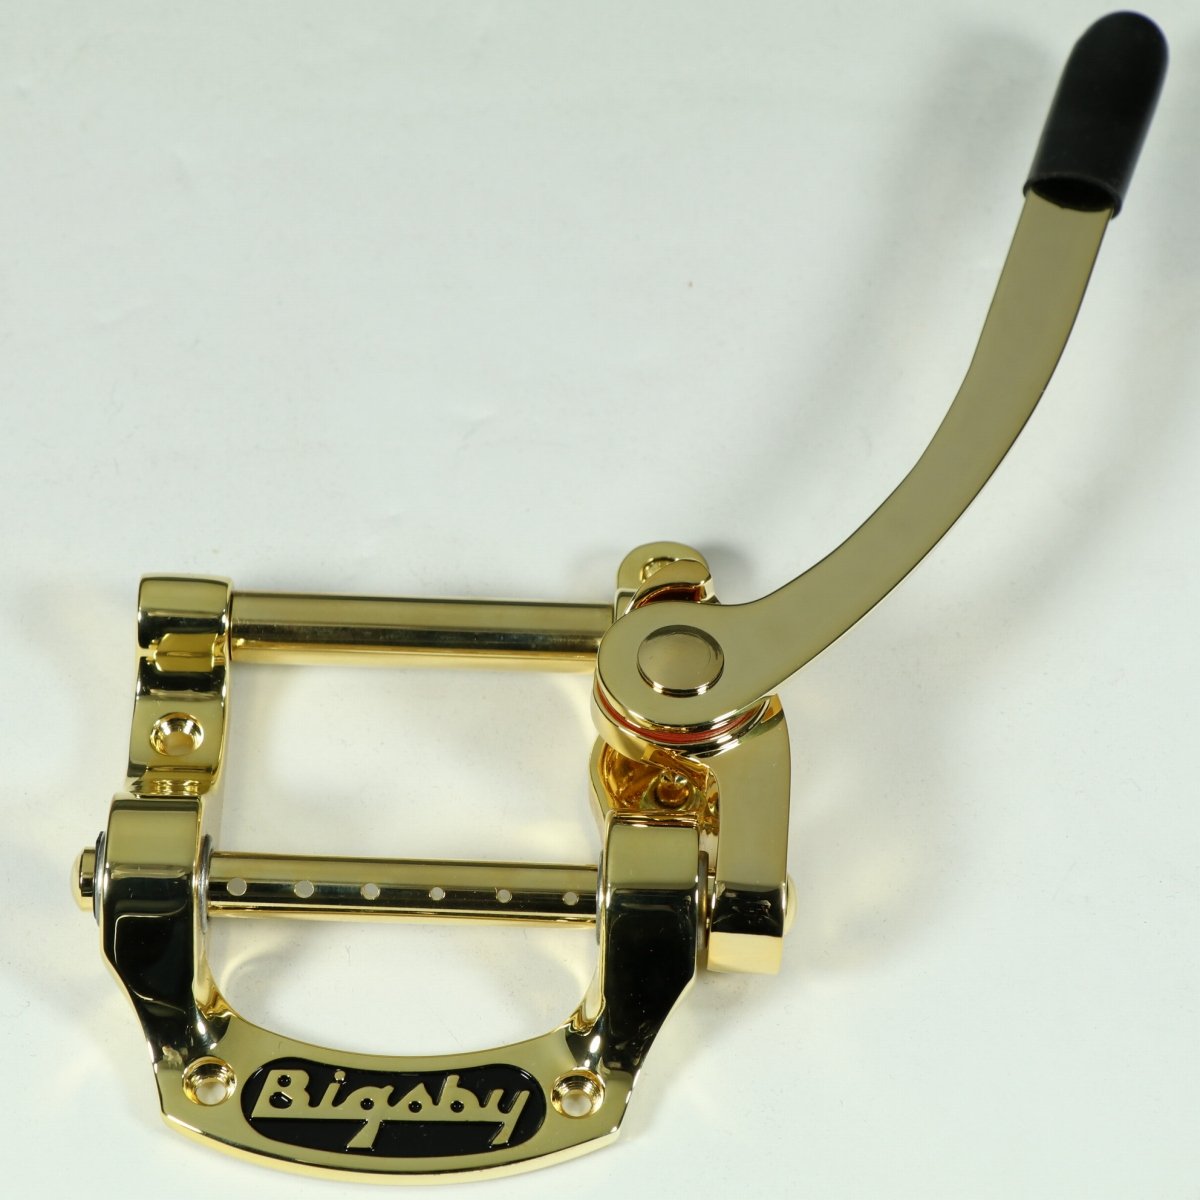 B5 Pinlessは、Bigsbyの生みの親であるポールビグスビーが生み出した、伝統的な手法によって製造されるKalamazooシリーズのBigsbyです。 "Horsehoe"(馬の蹄鉄)とも表現されるB5は、4箇所のネジ止めによってフラットトップのソリッドボディギターに取り付け可能で、非常に汎用性の高いことが特徴です。 Telecasterをはじめ、SG, Les Paul Jr、Rickenbacker 325などに使用されています。 ピンレス仕様で、弦を通すだけで弦交換が楽に行えます。 ※画像はサンプルです。 シリーズ:Kalamazoo Line 製造法:Cast 材質:アルミ 概算重量:287 Grams/10.1 oz. 全長:4 3/4”/120.65mm 全幅:3 3/4”/95.3mm 備考:※研磨やメッキにより、サイズや重量等には個体差があります。 製品仕様 シリーズKalamazoo Line製造法Cast材質アルミ概算重量287 Grams/10.1 oz.全長4 3/4”/120.65mm全幅3 3/4”/95.3mm備考※研磨やメッキにより、サイズや重量等には個体差があります。